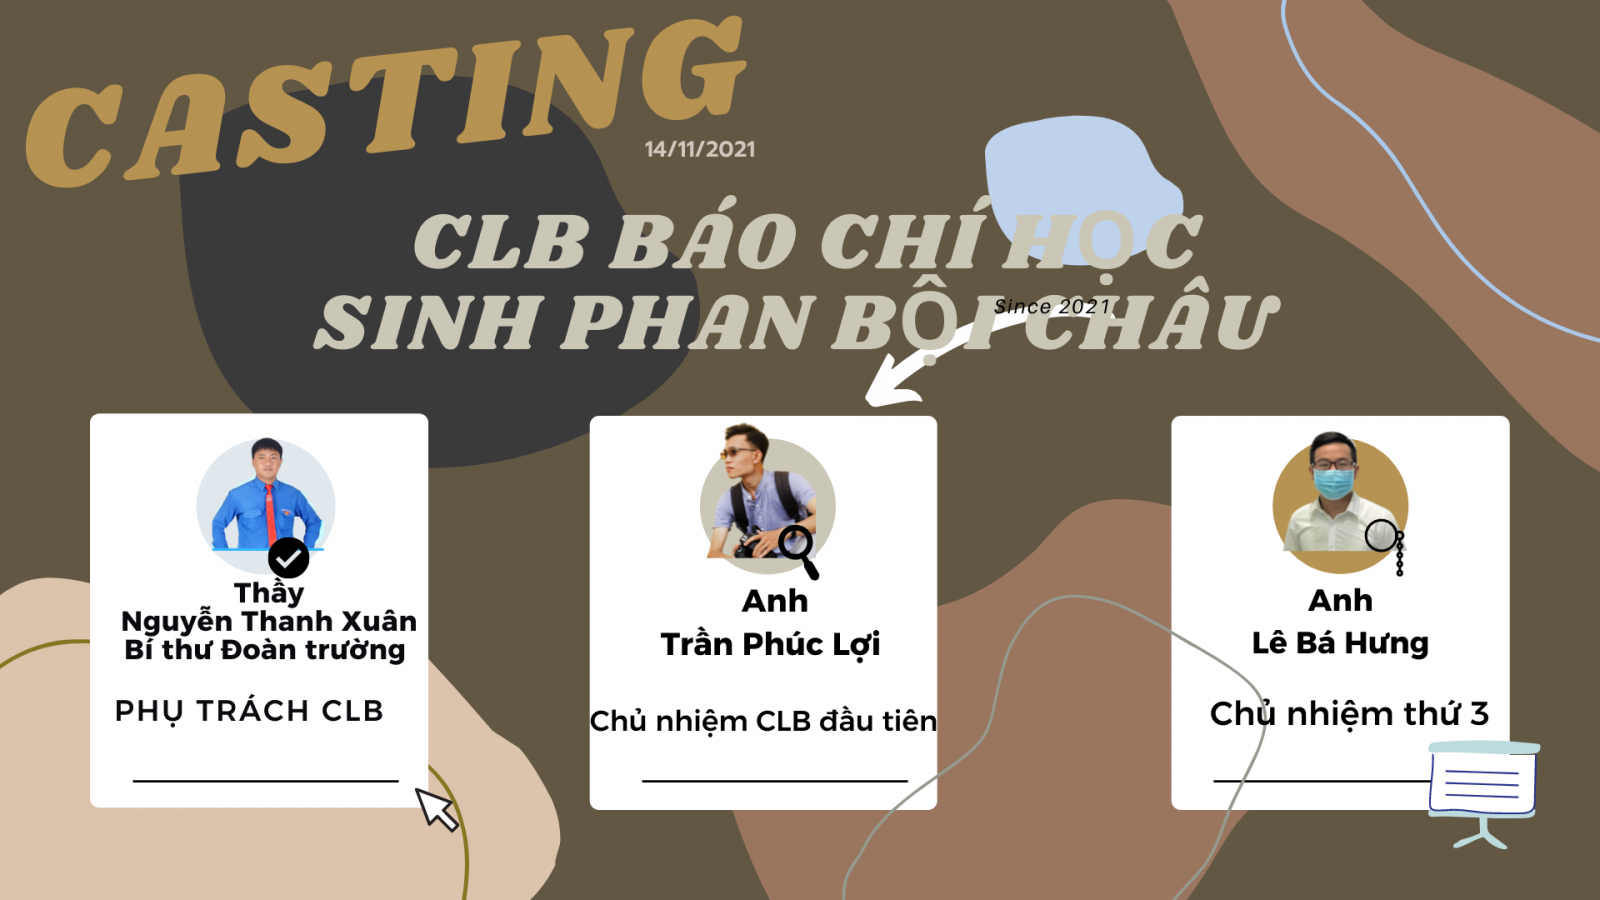 Kết quả tuyển chọn thành viên CLB Báo chí học sinh Phan Bội Châu